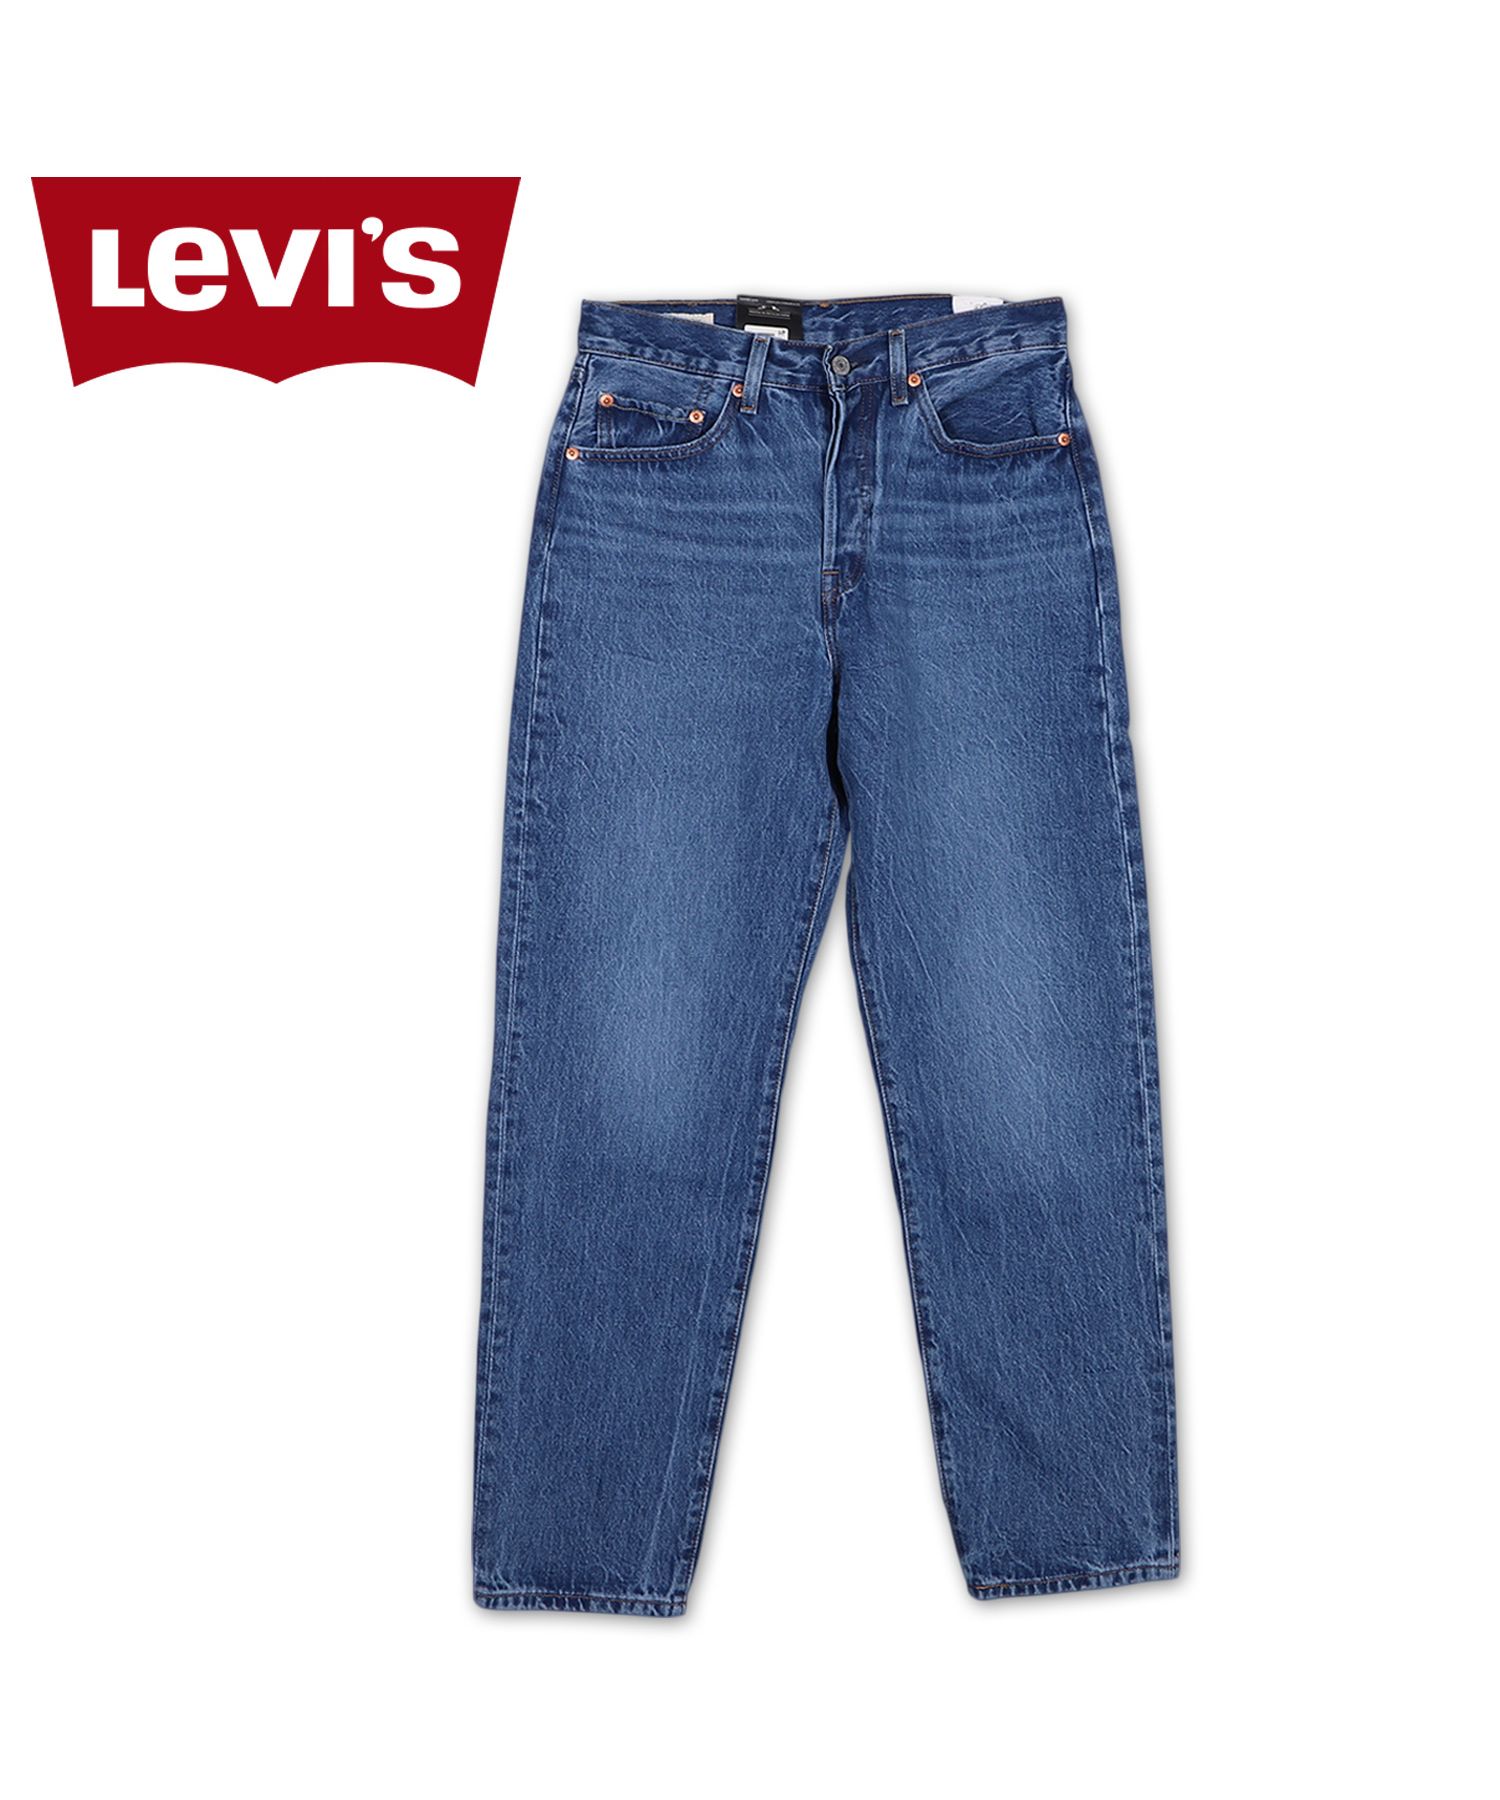 リーバイス(Levi's) |リーバイス LEVIS 501 81 デニム パンツ ジーンズ ...